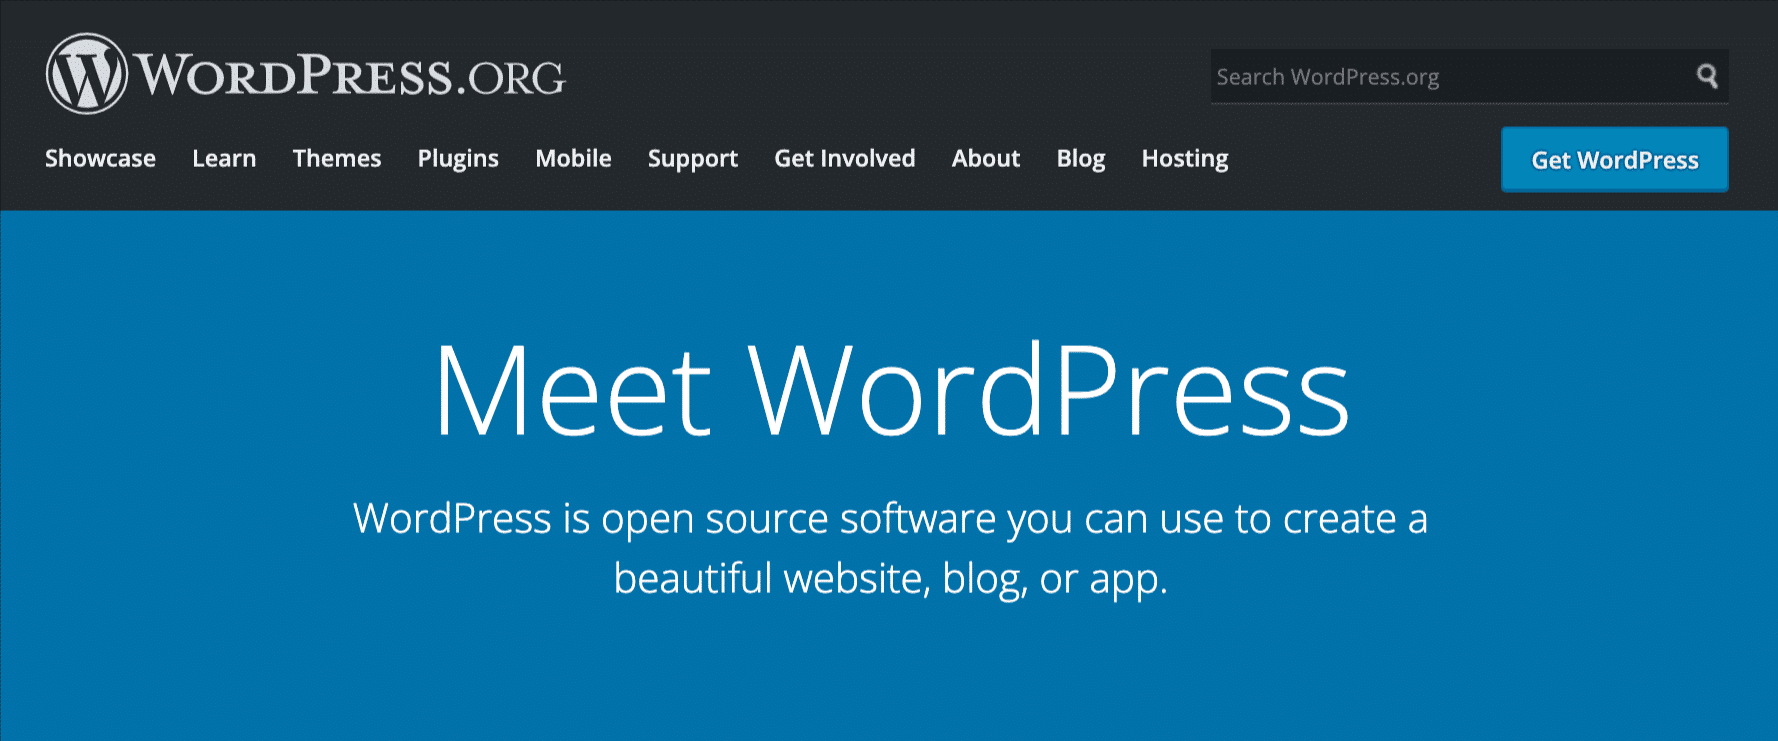 Página inicial do WordPress.org.